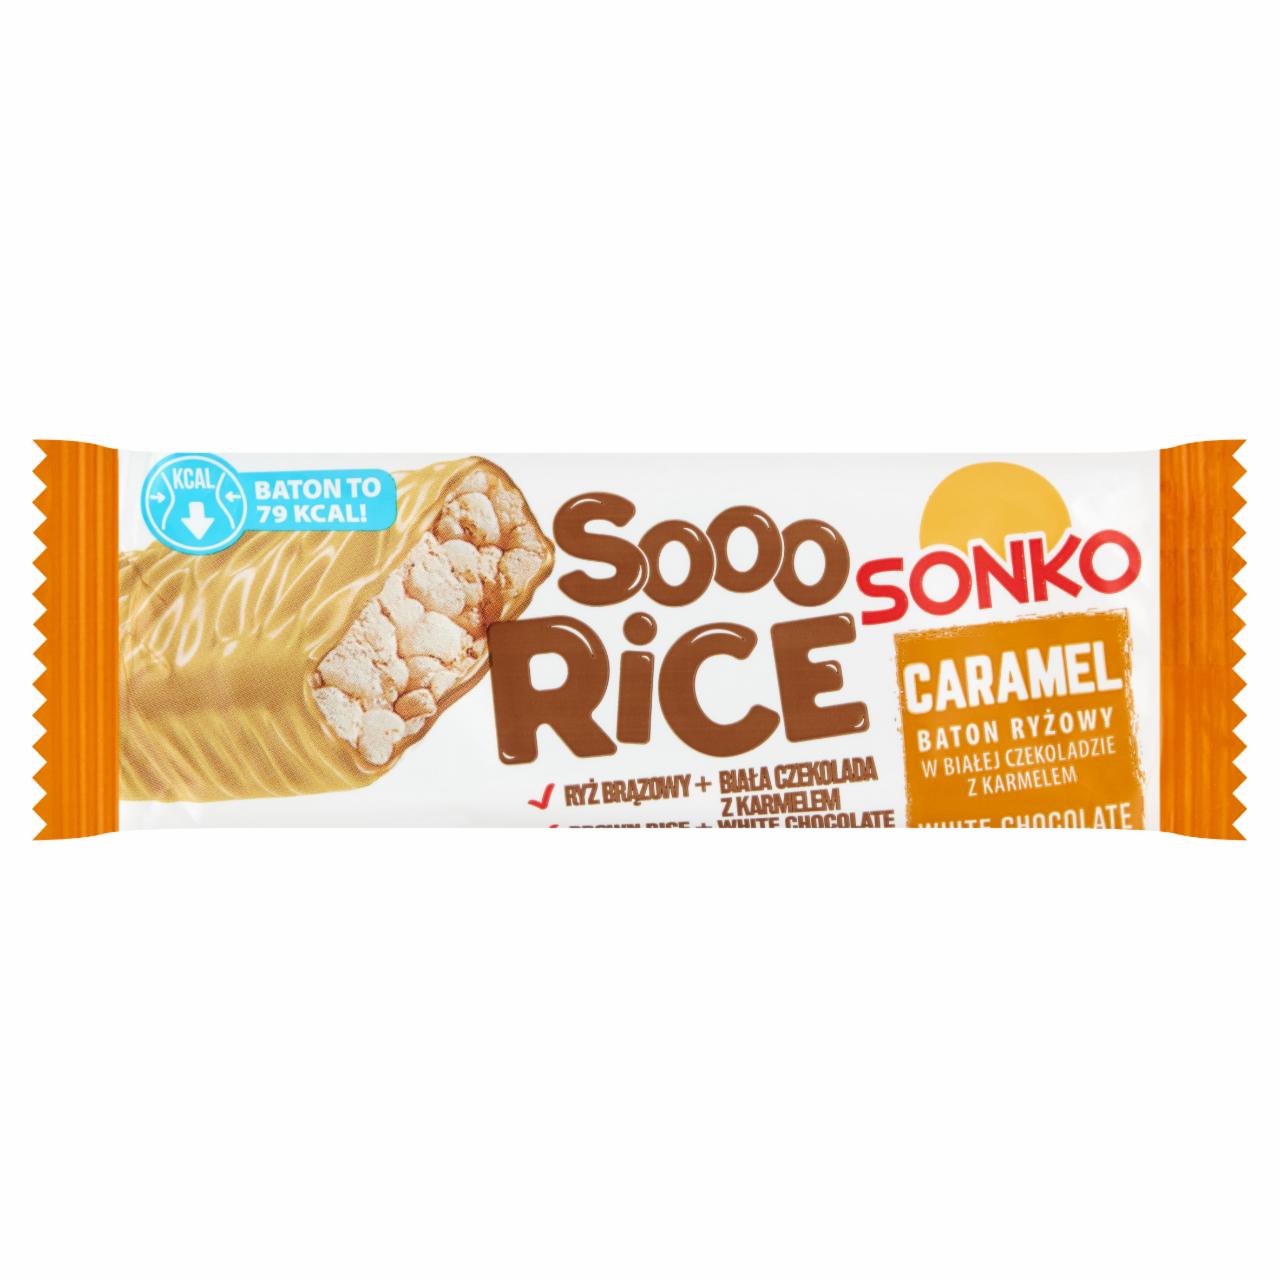 Zdjęcia - Sonko Sooo Rice Baton ryżowy w białej czekoladzie z karmelem 16 g